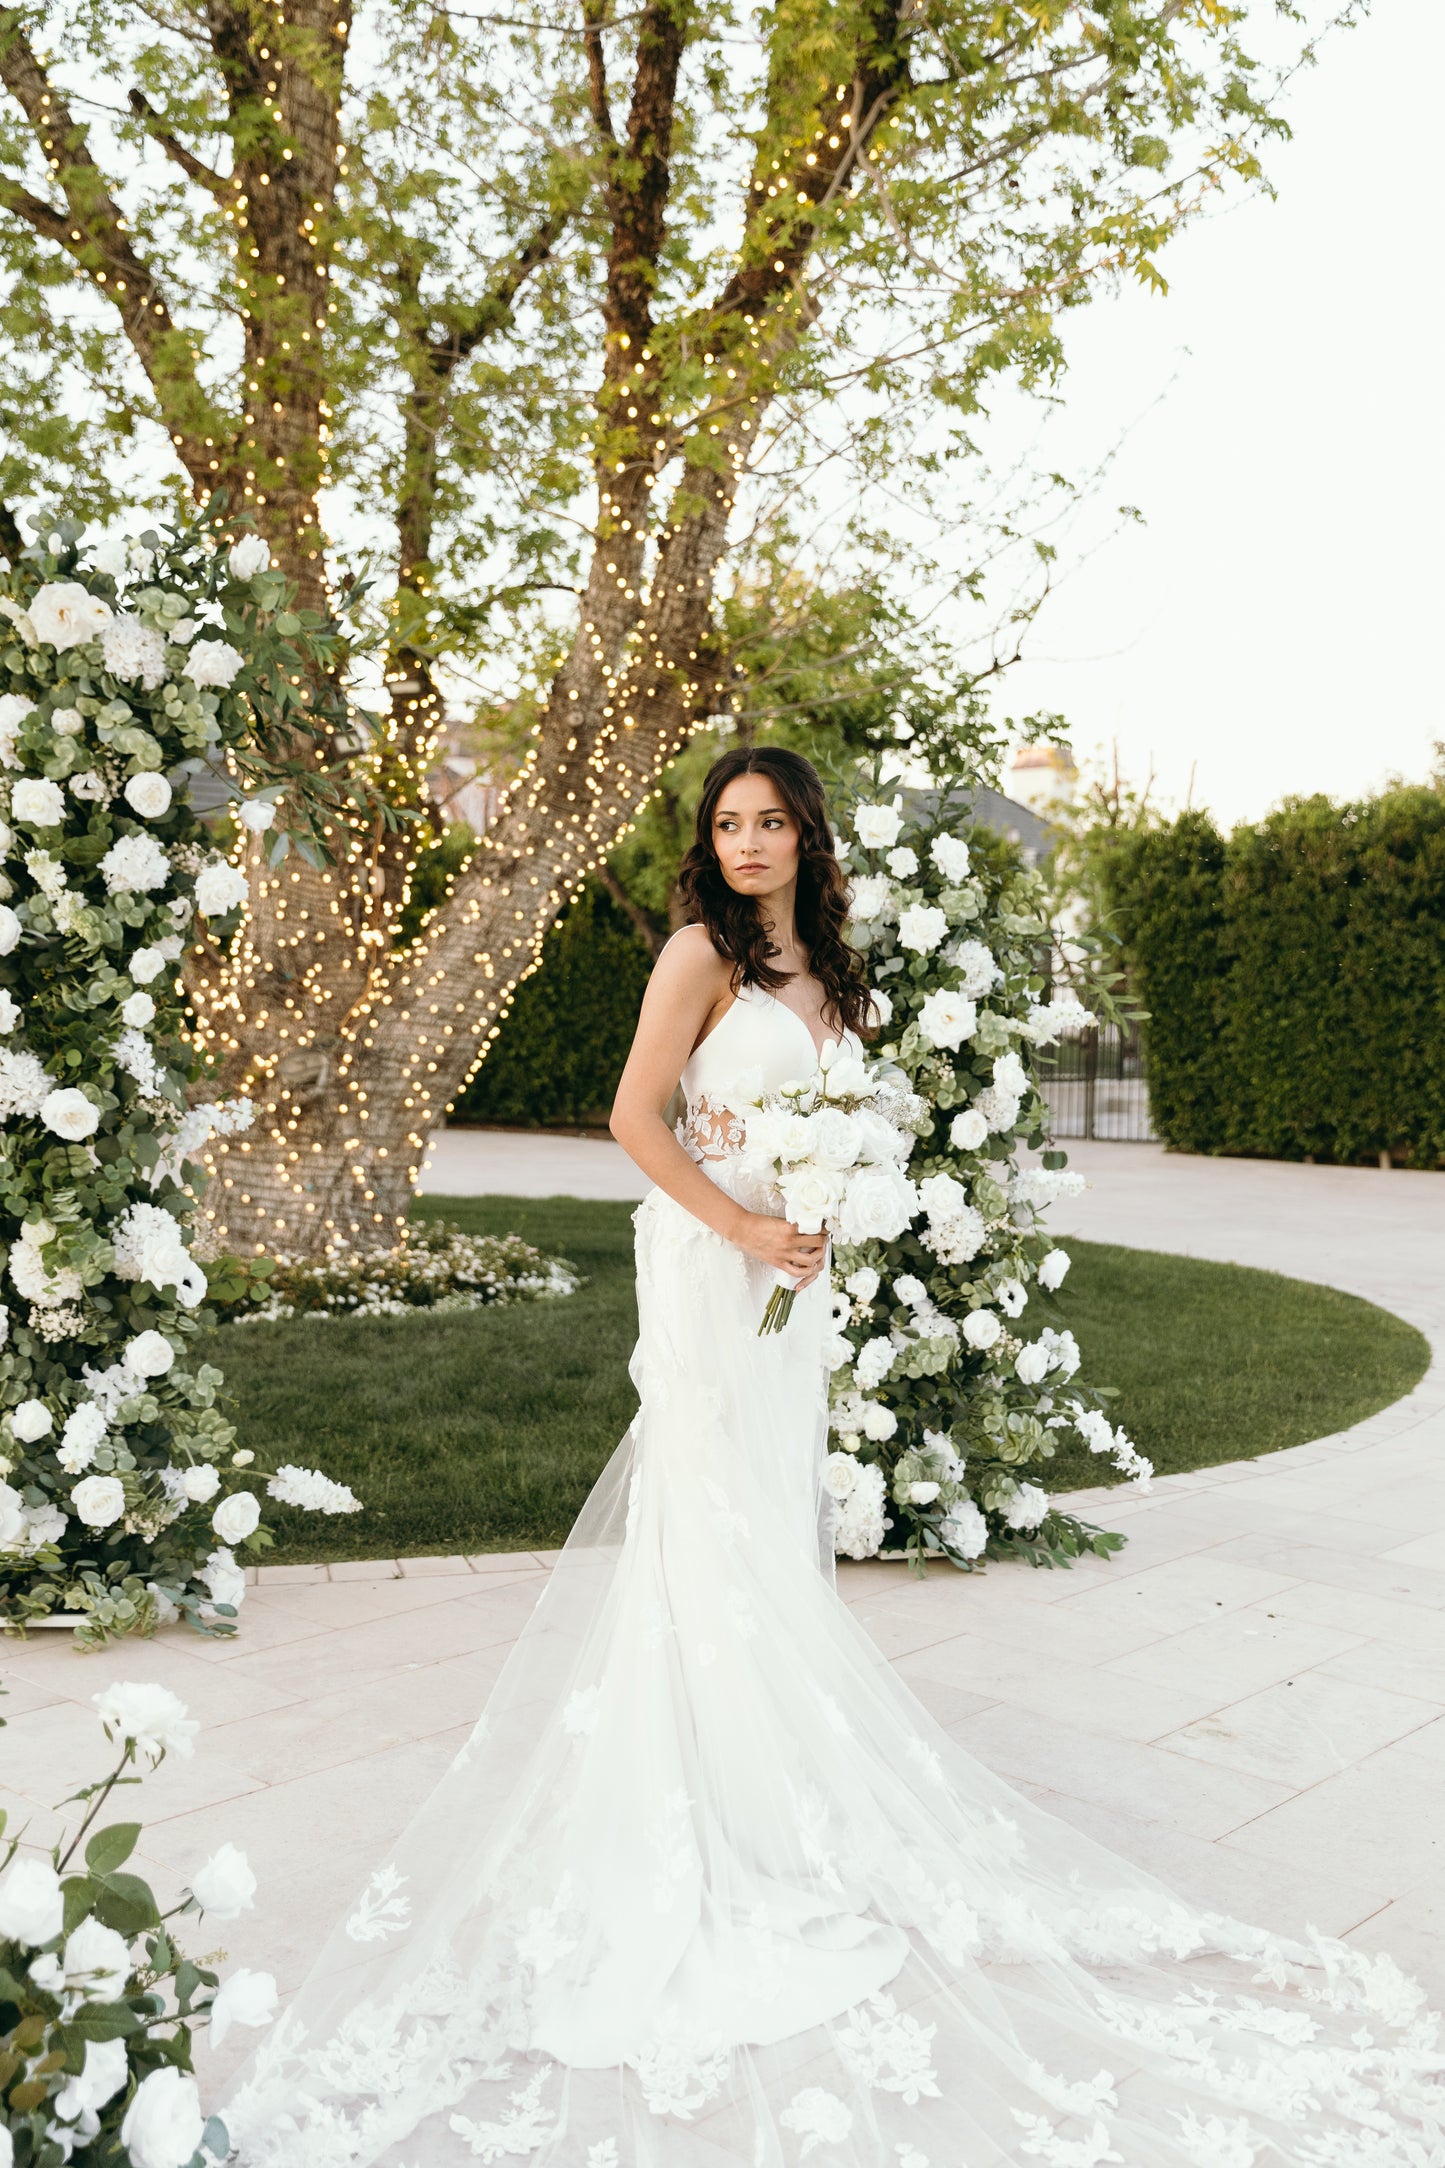 sydney-wedding-arch-with-bride